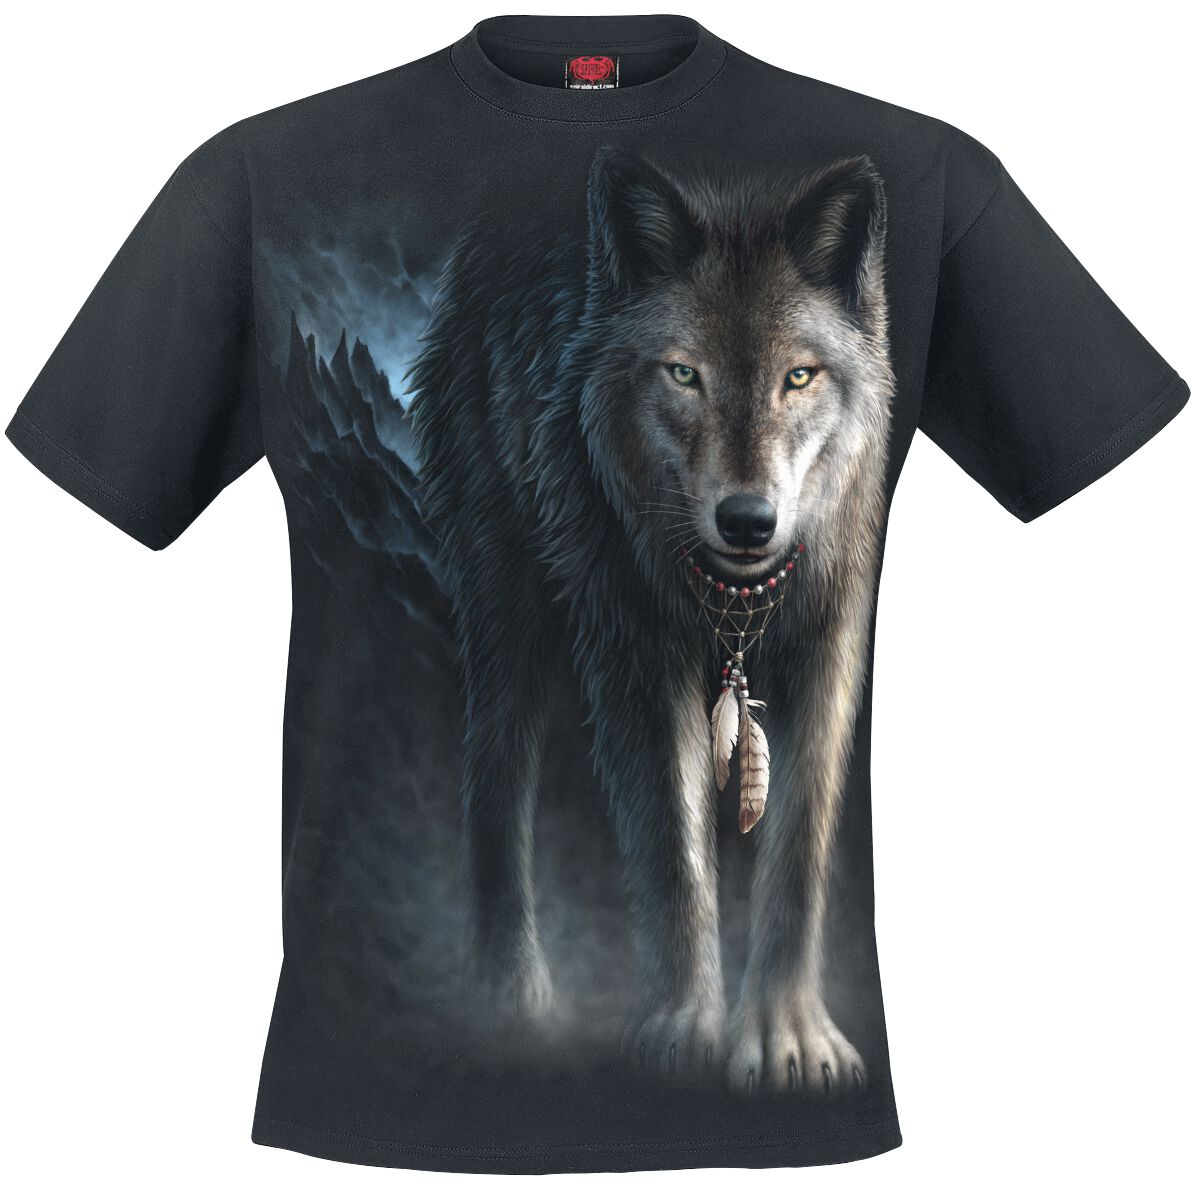 Spiral - Gothic T-Shirt - From Darkness - S bis 4XL - für Männer - Größe XXL - schwarz